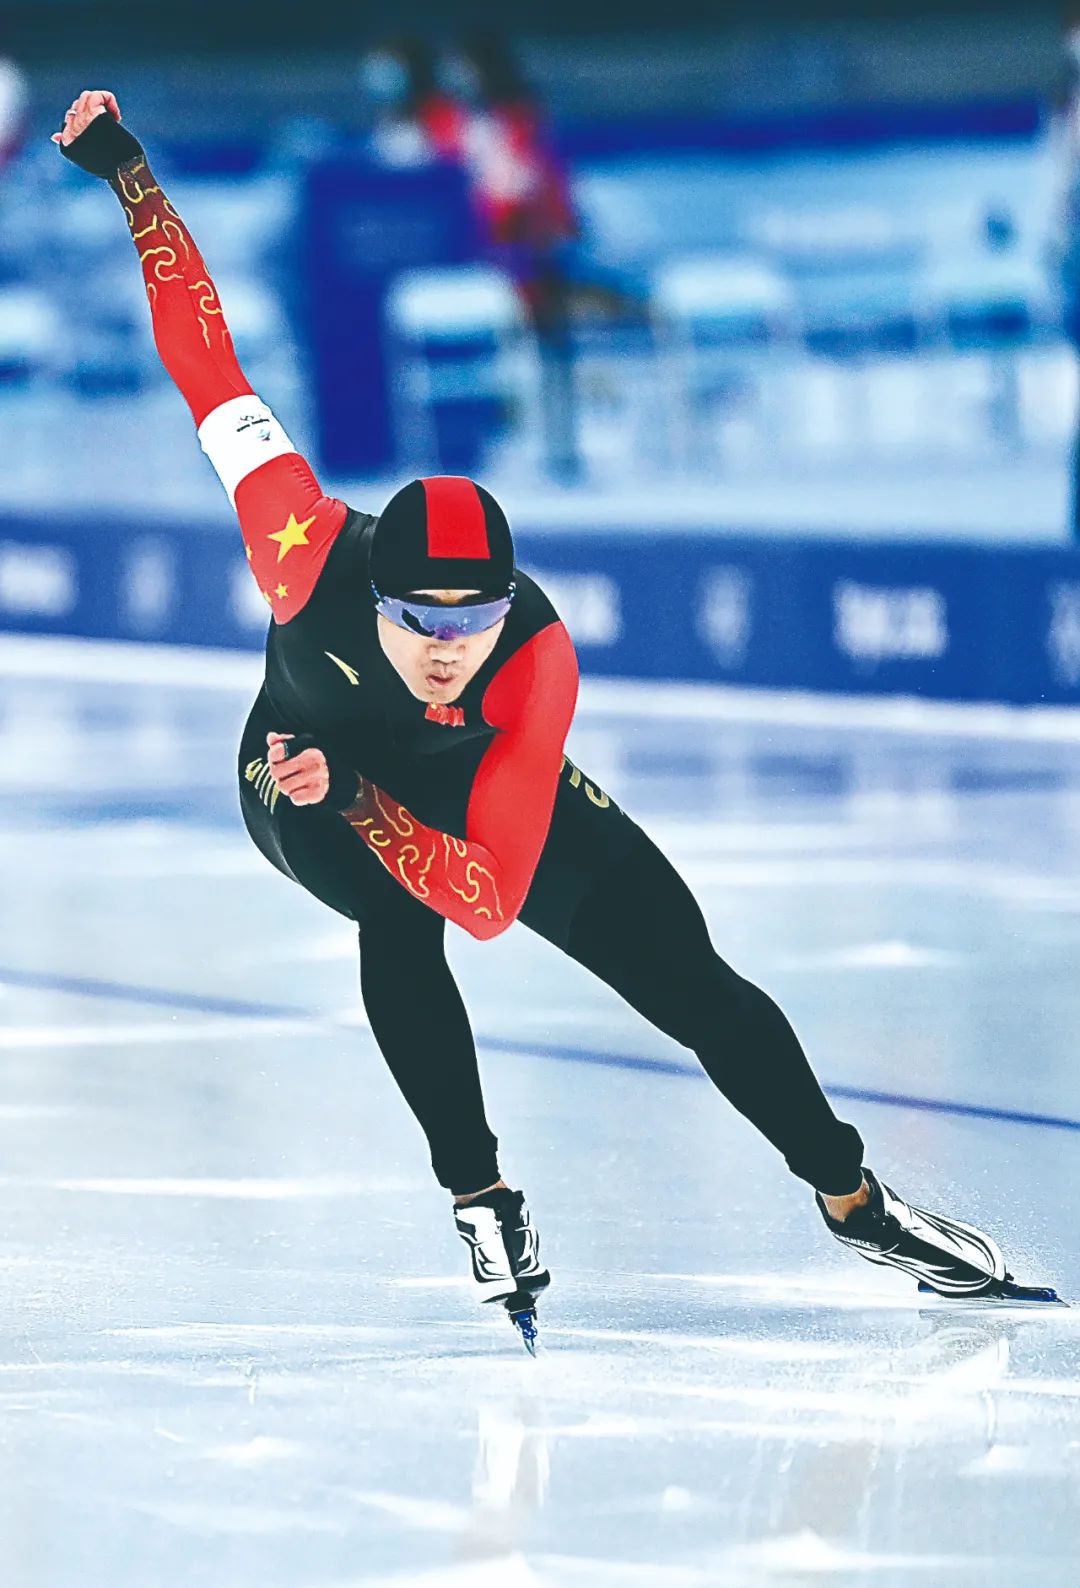 和最终成绩均是全场最快中国选手高亭宇第7组出场北京冬奥会速度滑冰